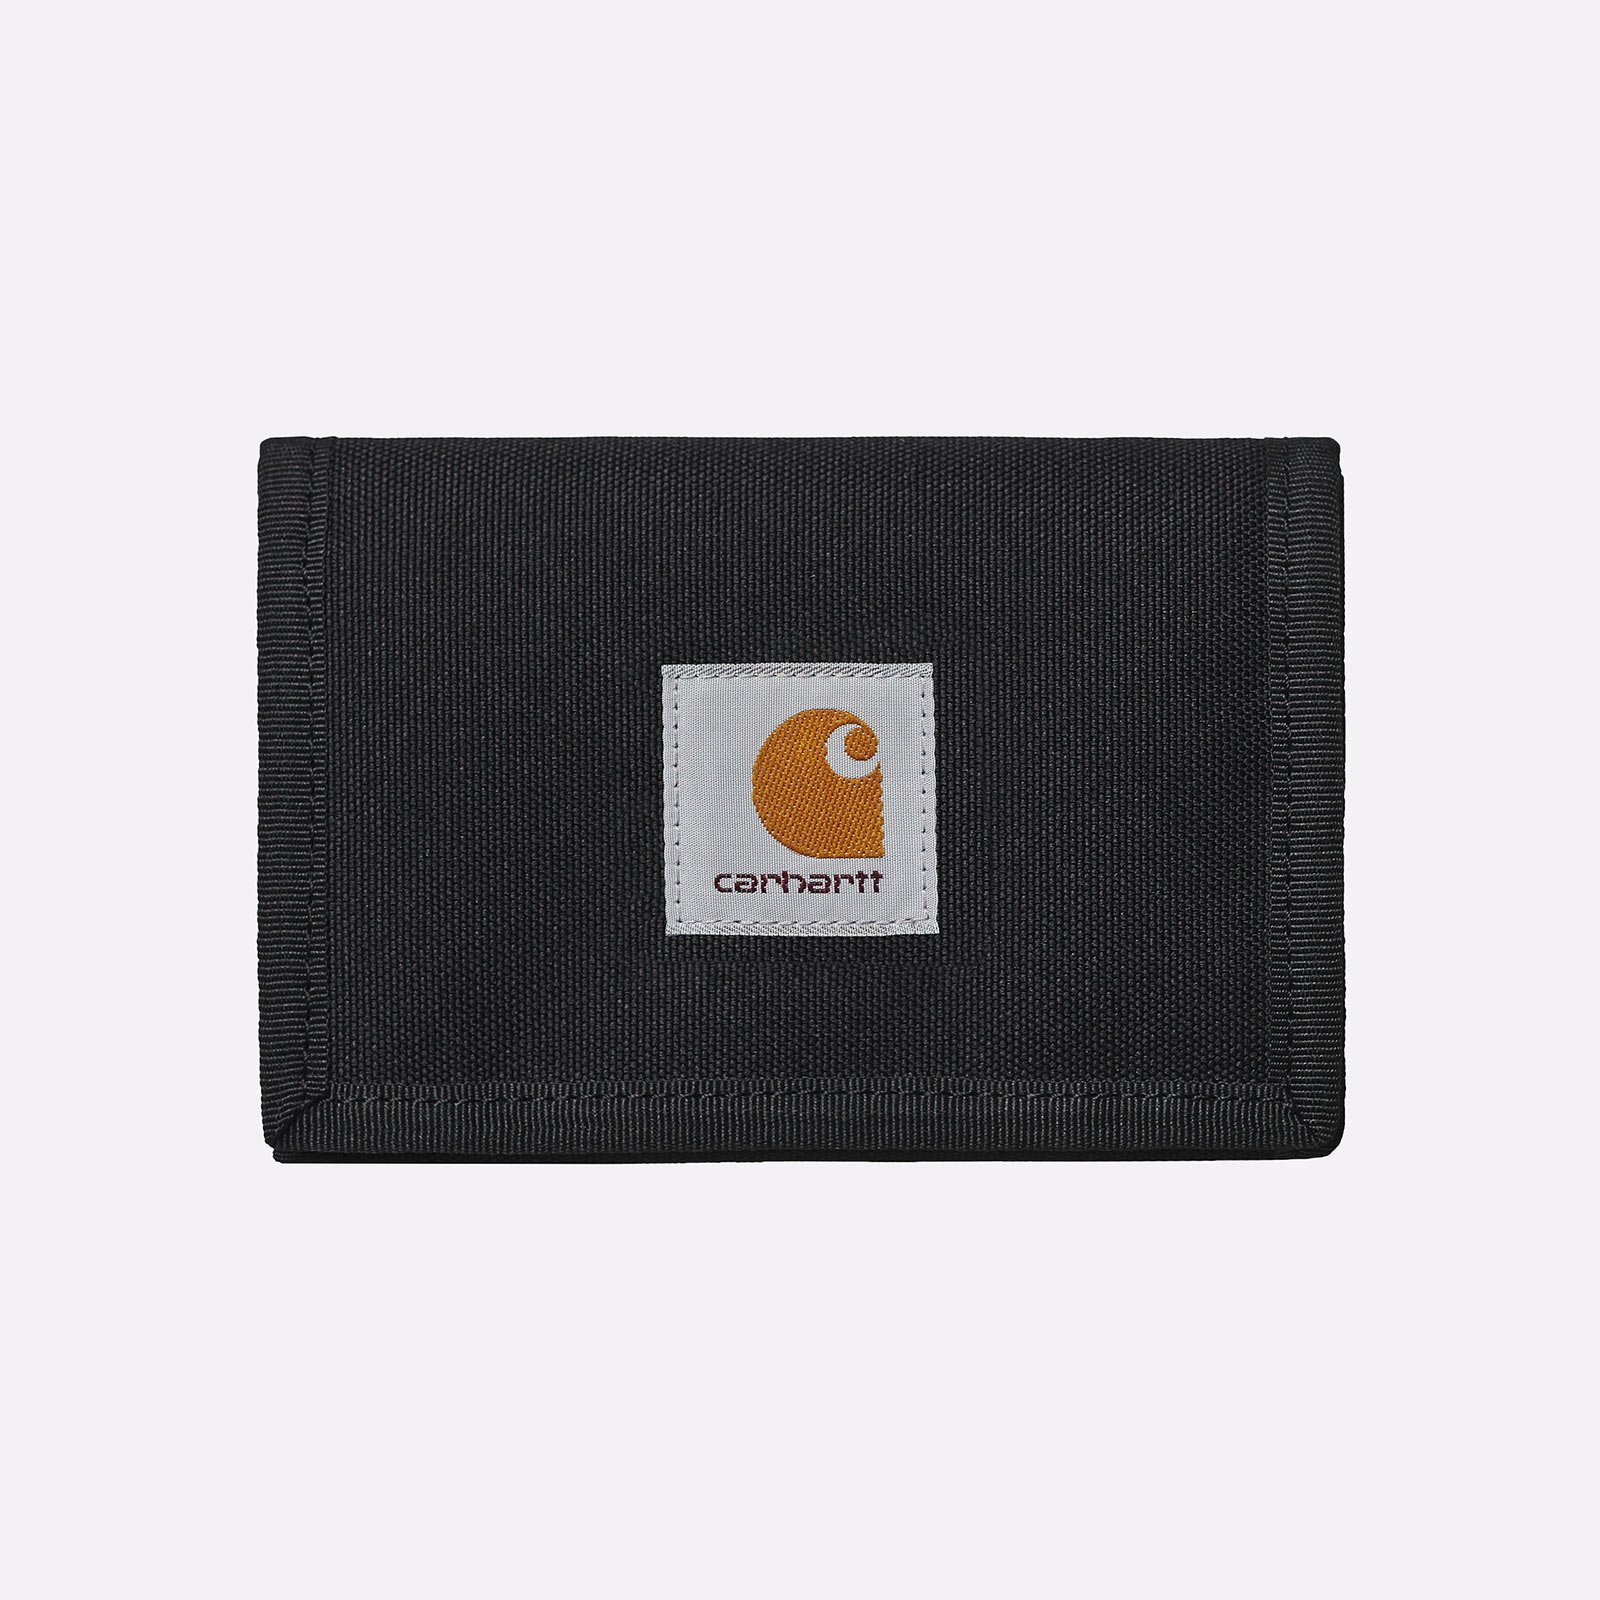  черный бумажник Carhartt WIP Alec Wallet I031471-black - цена, описание, фото 1